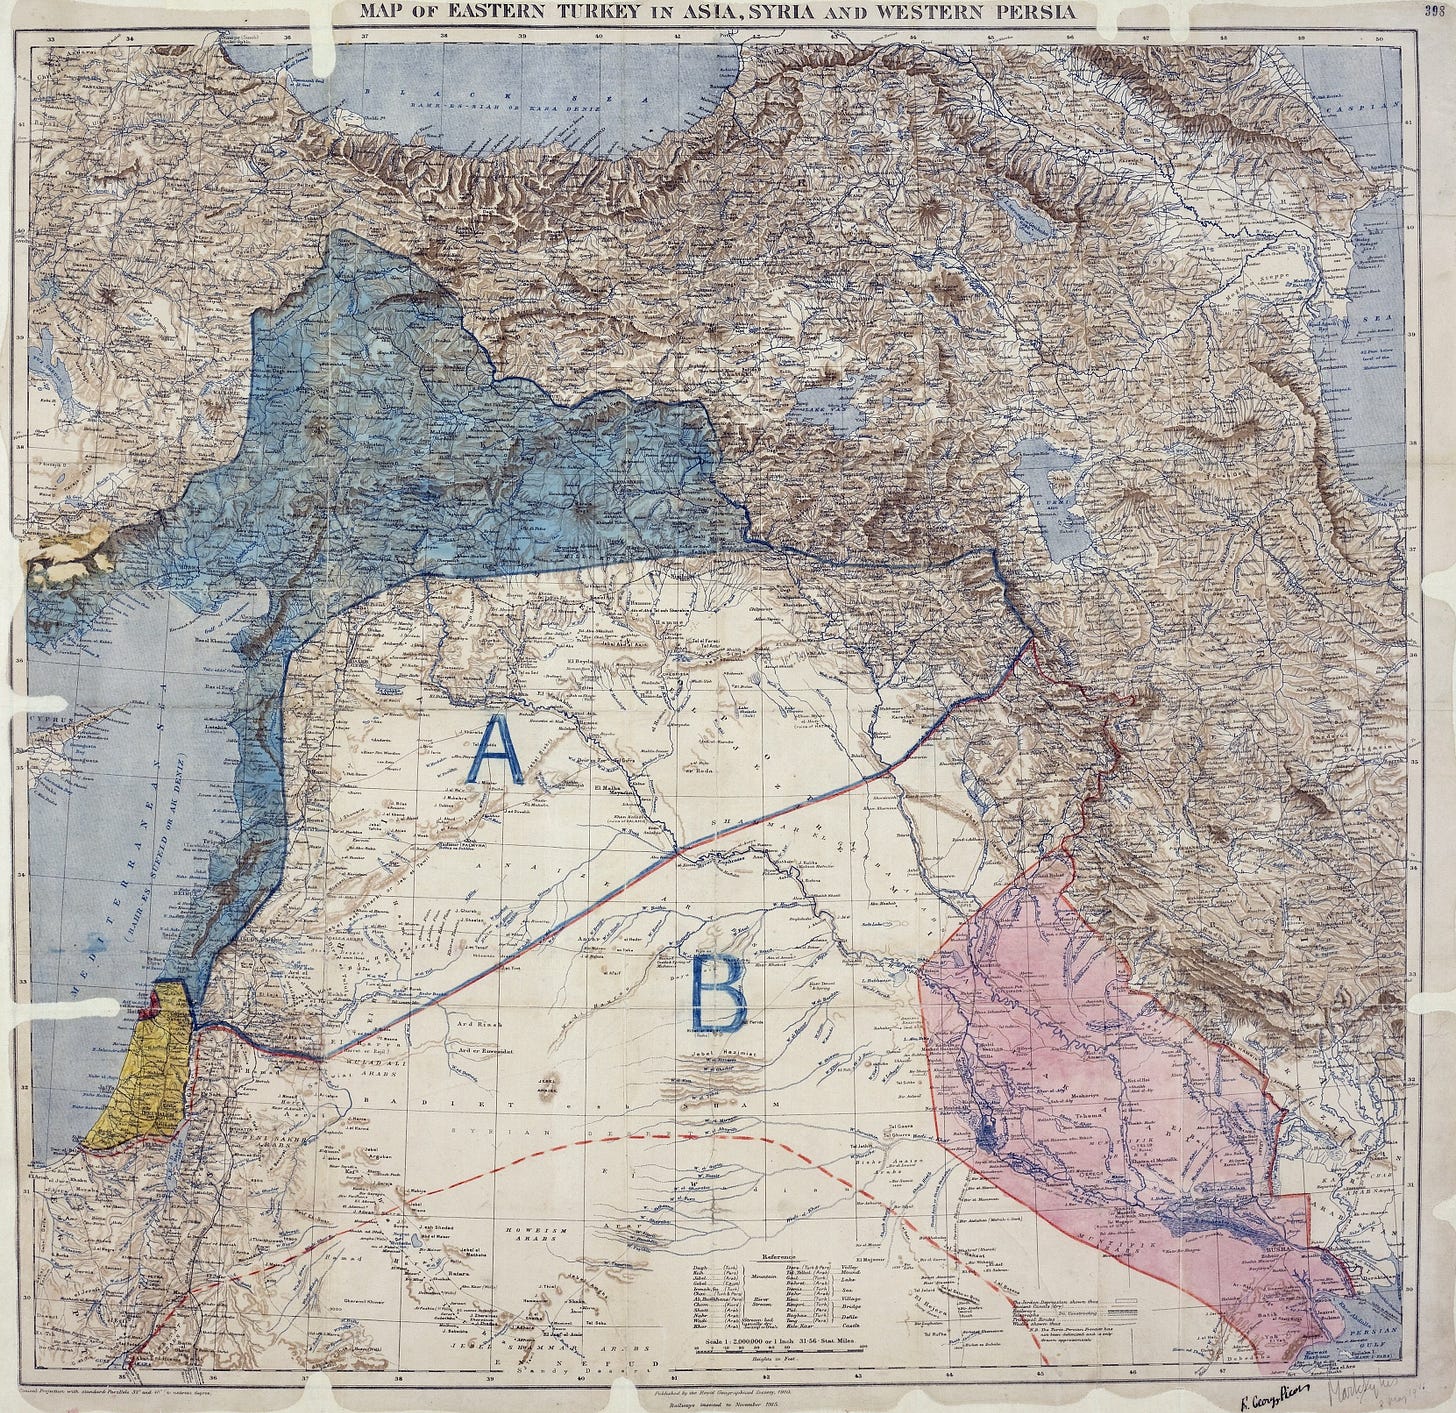 Mappa che mostra la Turchia orientale in Asia, Siria e Persia occidentale e le aree di controllo e influenza concordate tra britannici e francesi.